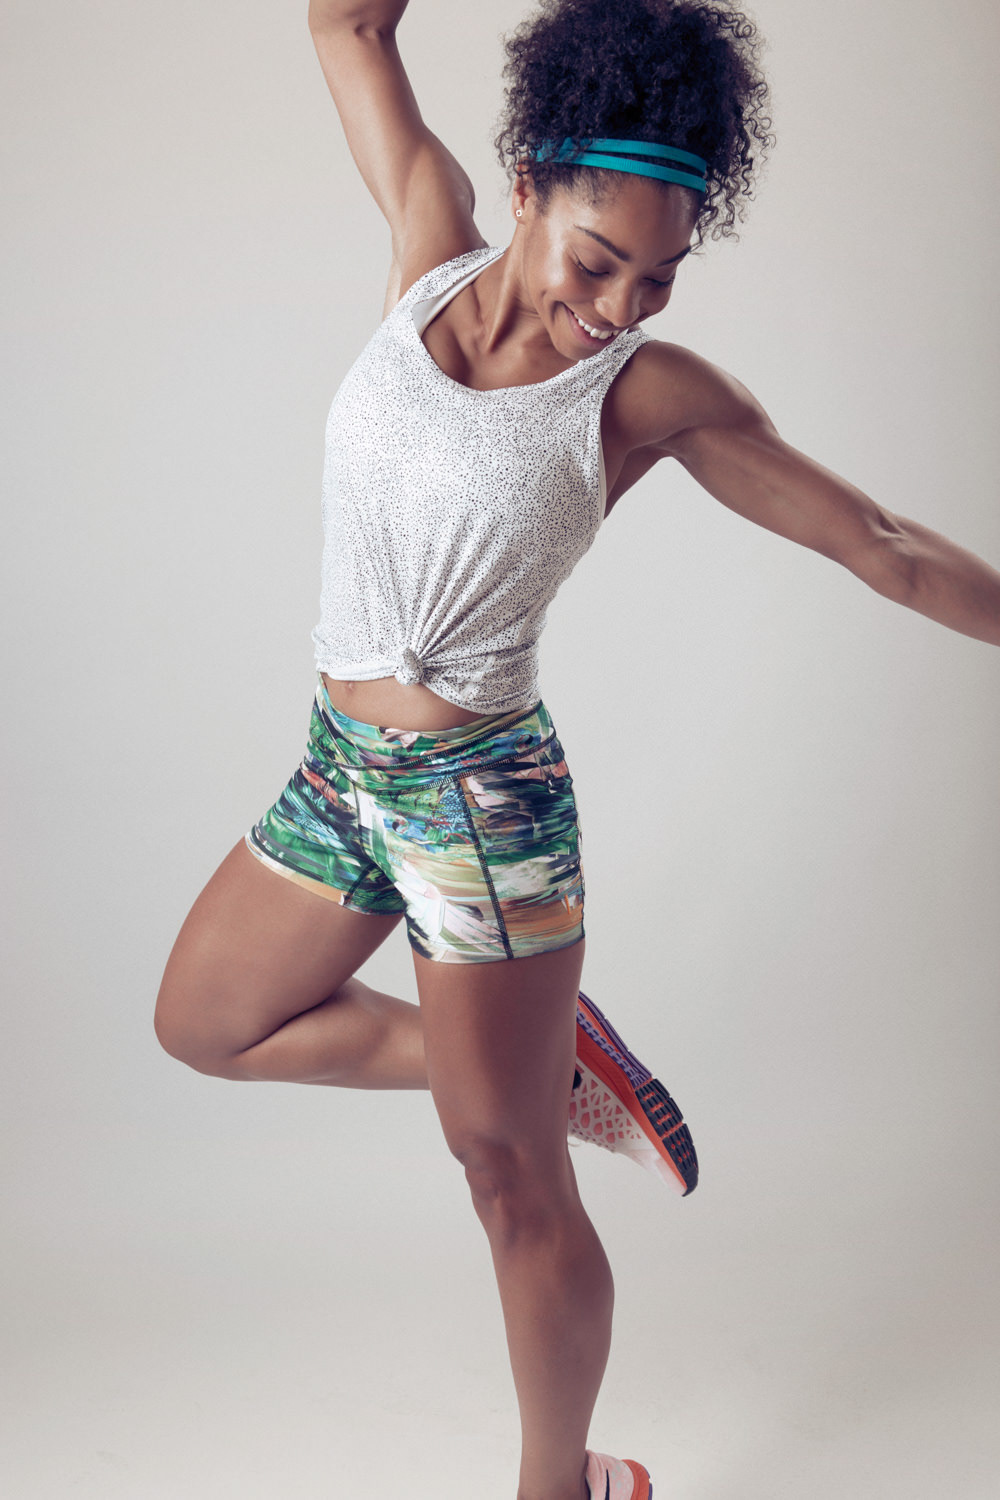 Natasha Ward  studio Nike athlete workout Fashion  model female fitness